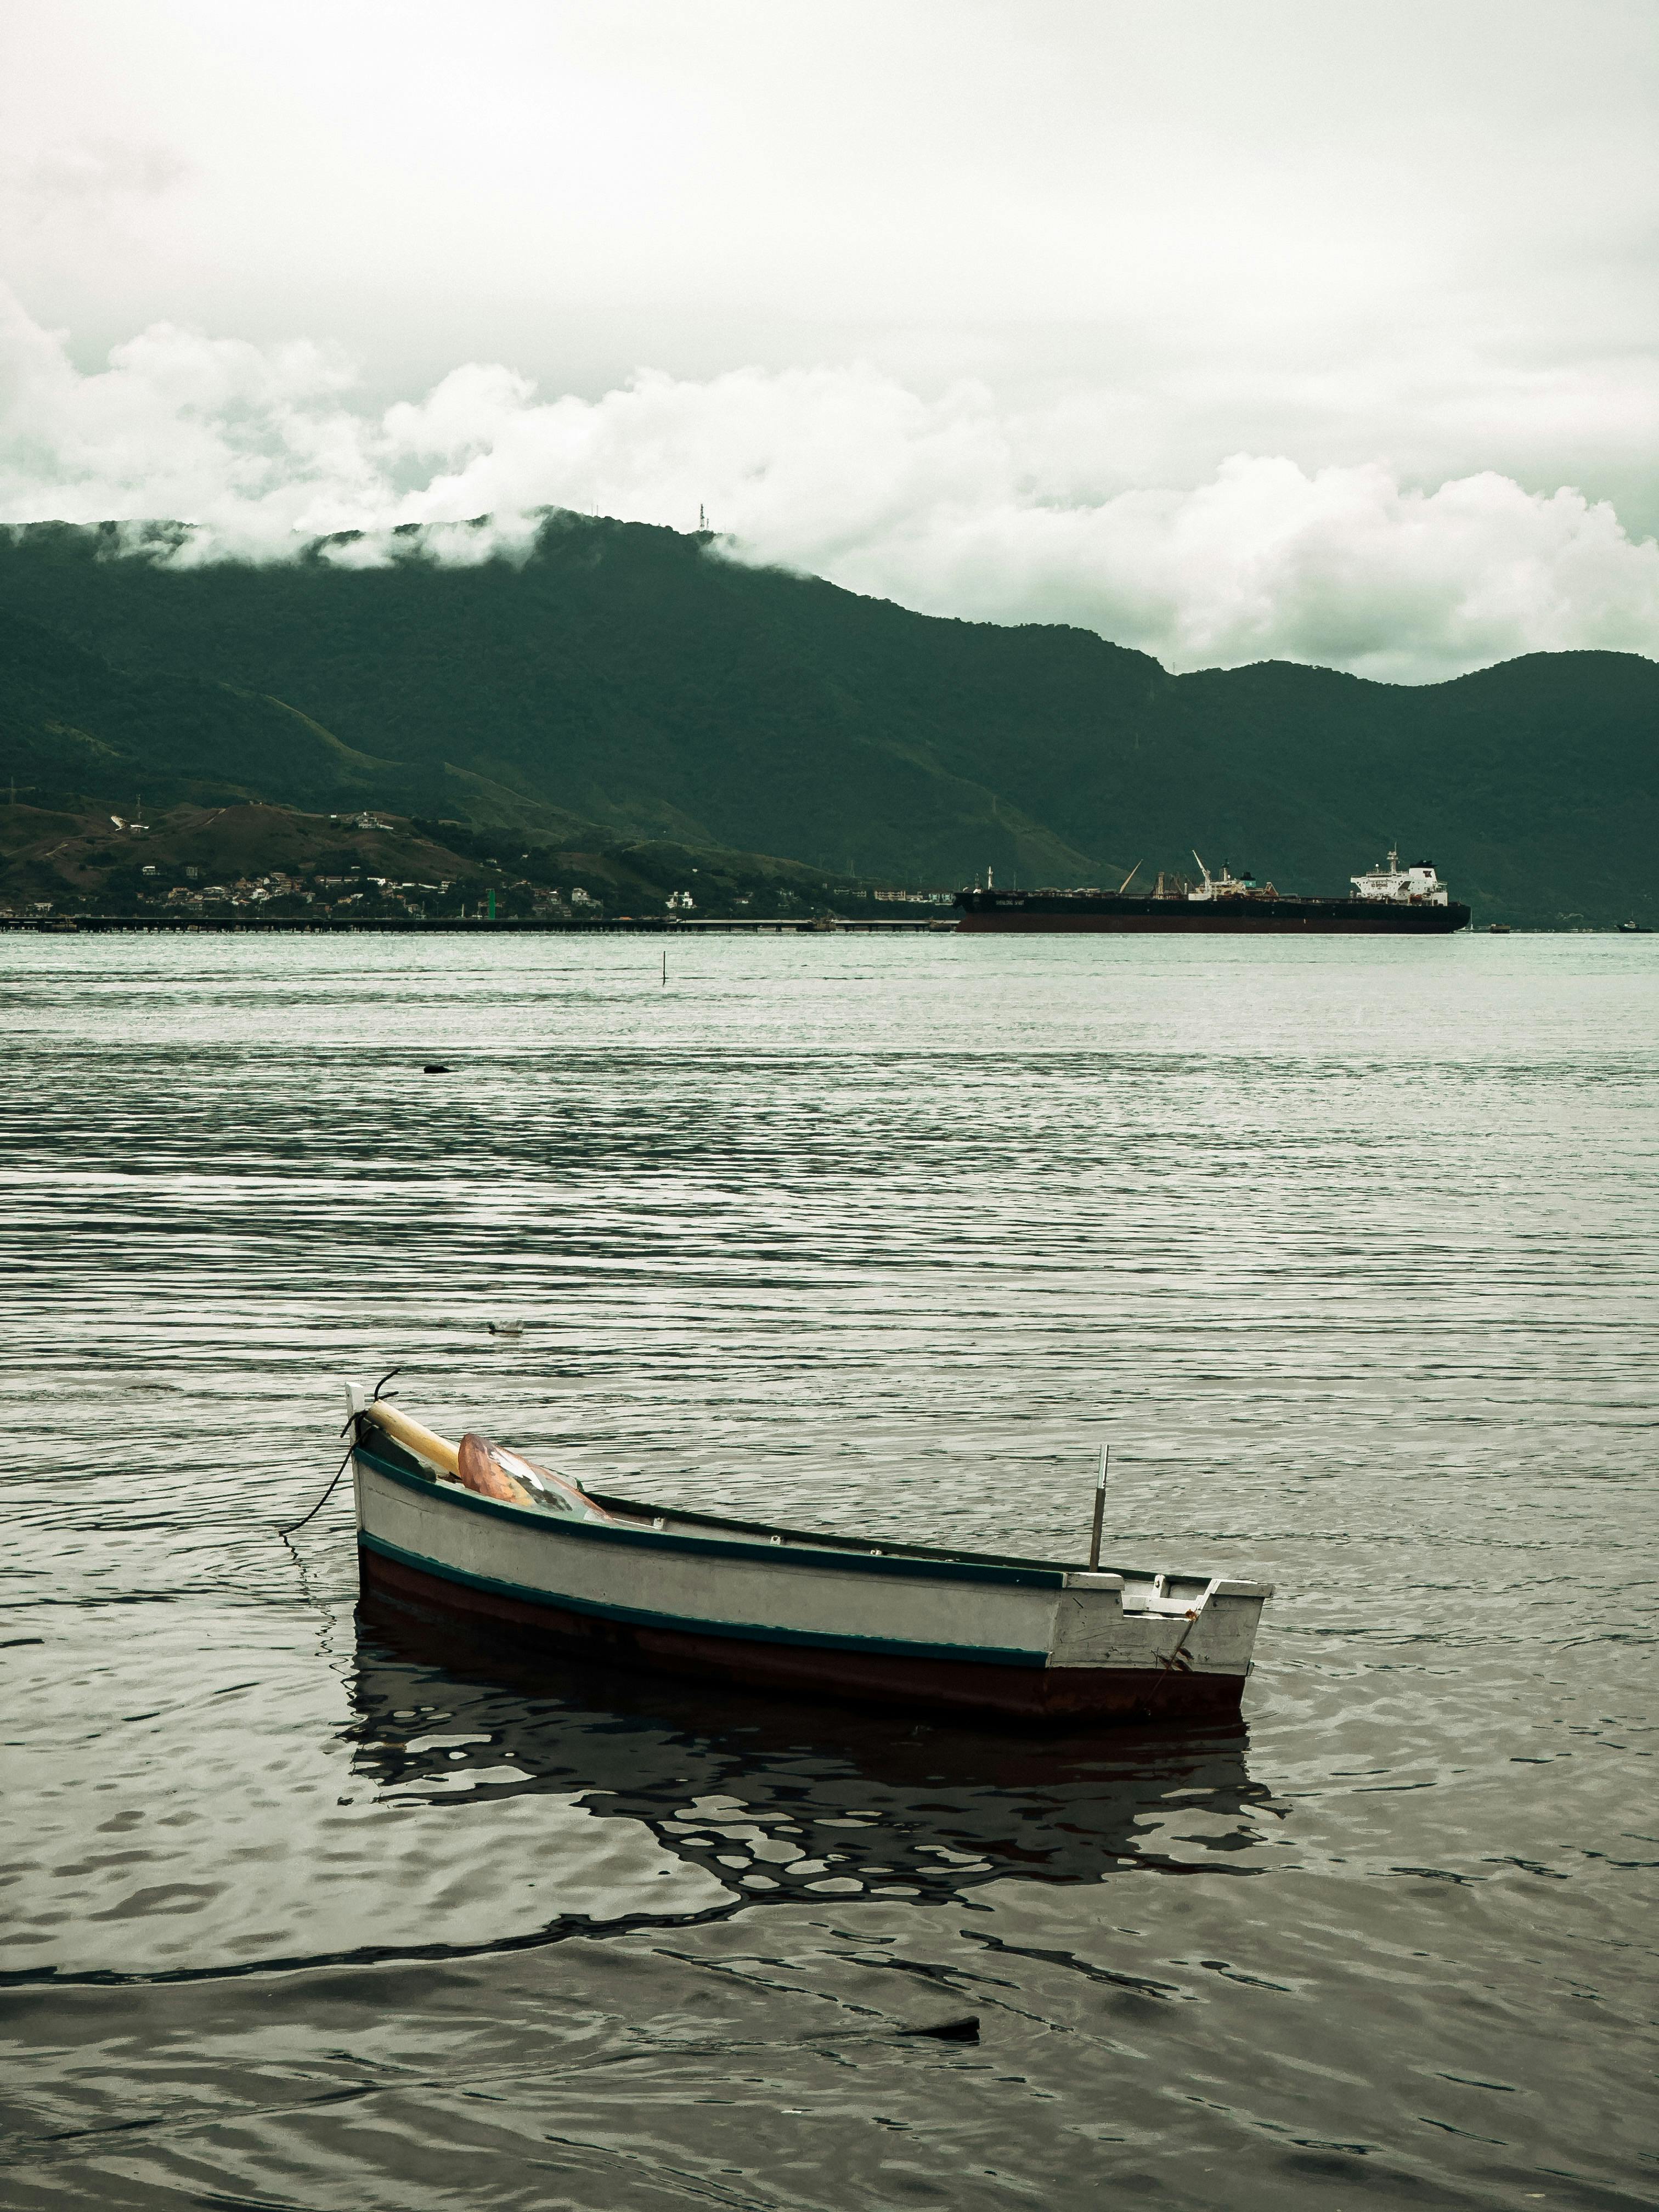 Empty Boat Anchored near the Shore · Free Stock Photo